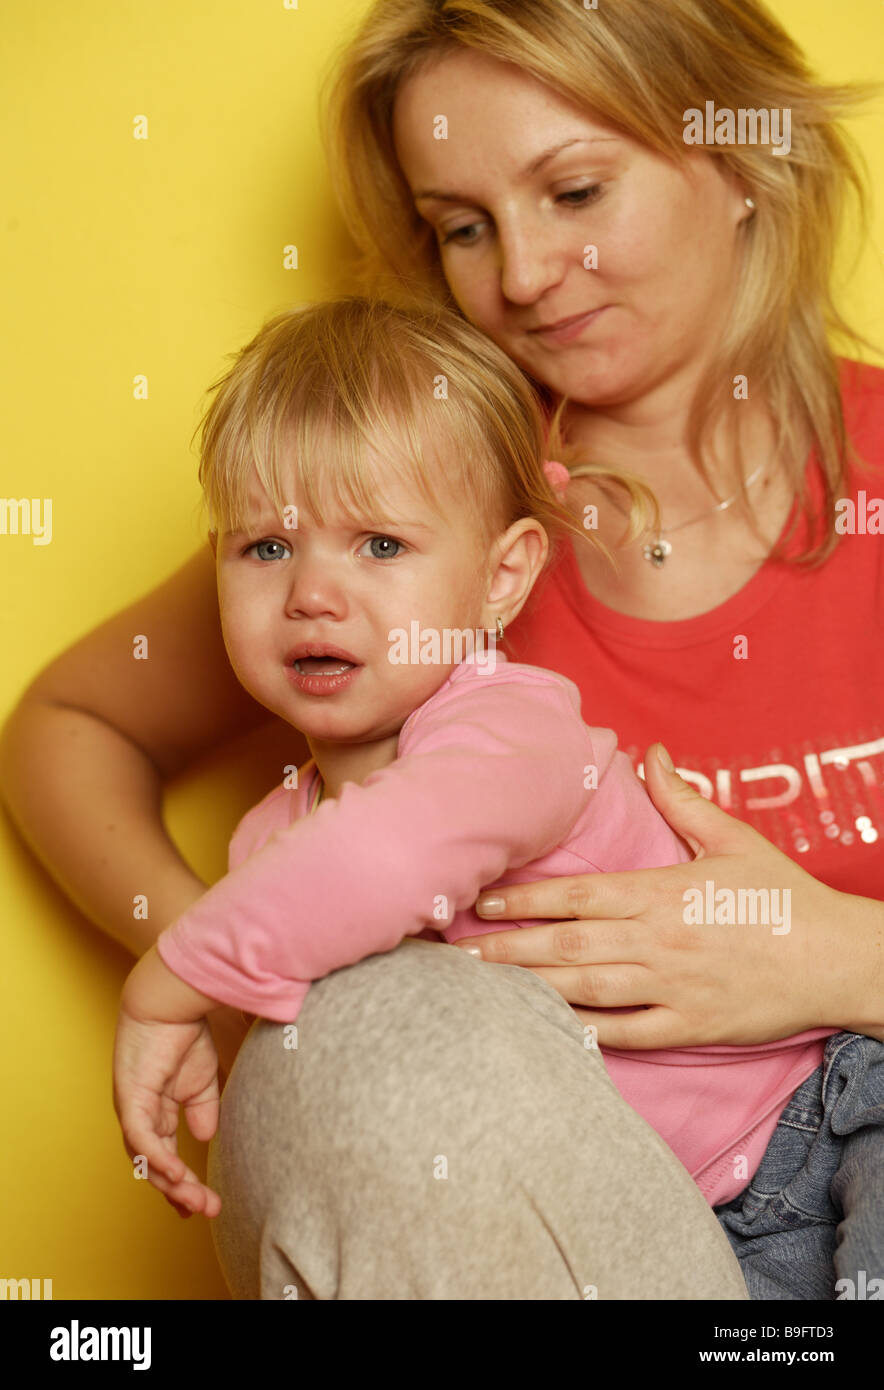 Cris de fille mère semi-confort personnes série portrait femme enfant fille mécontent insatisfait de l'expression faciale defiance Banque D'Images